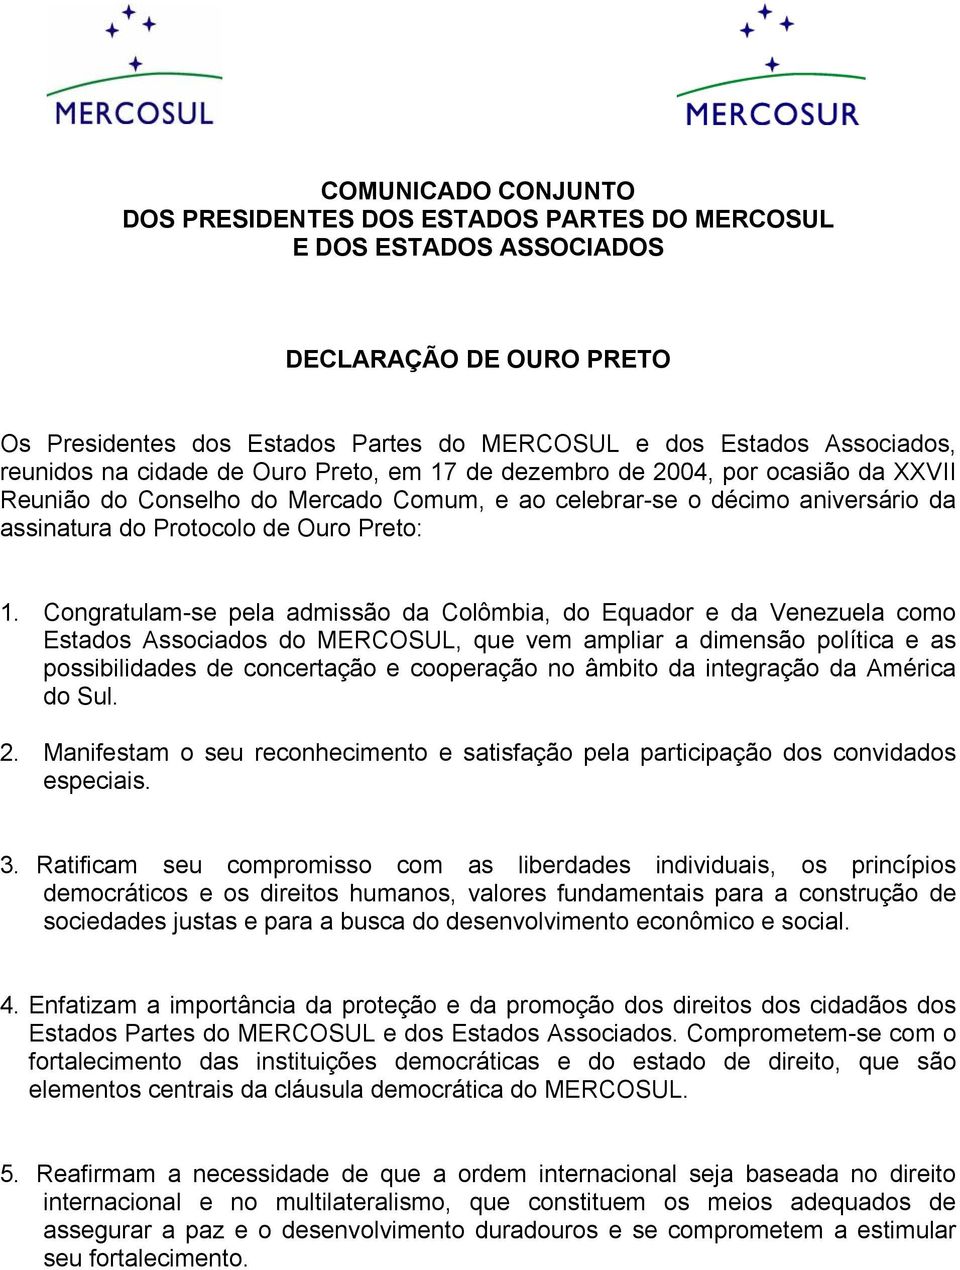 Congratulam-se pela admissão da Colômbia, do Equador e da Venezuela como Estados Associados do MERCOSUL, que vem ampliar a dimensão política e as possibilidades de concertação e cooperação no âmbito